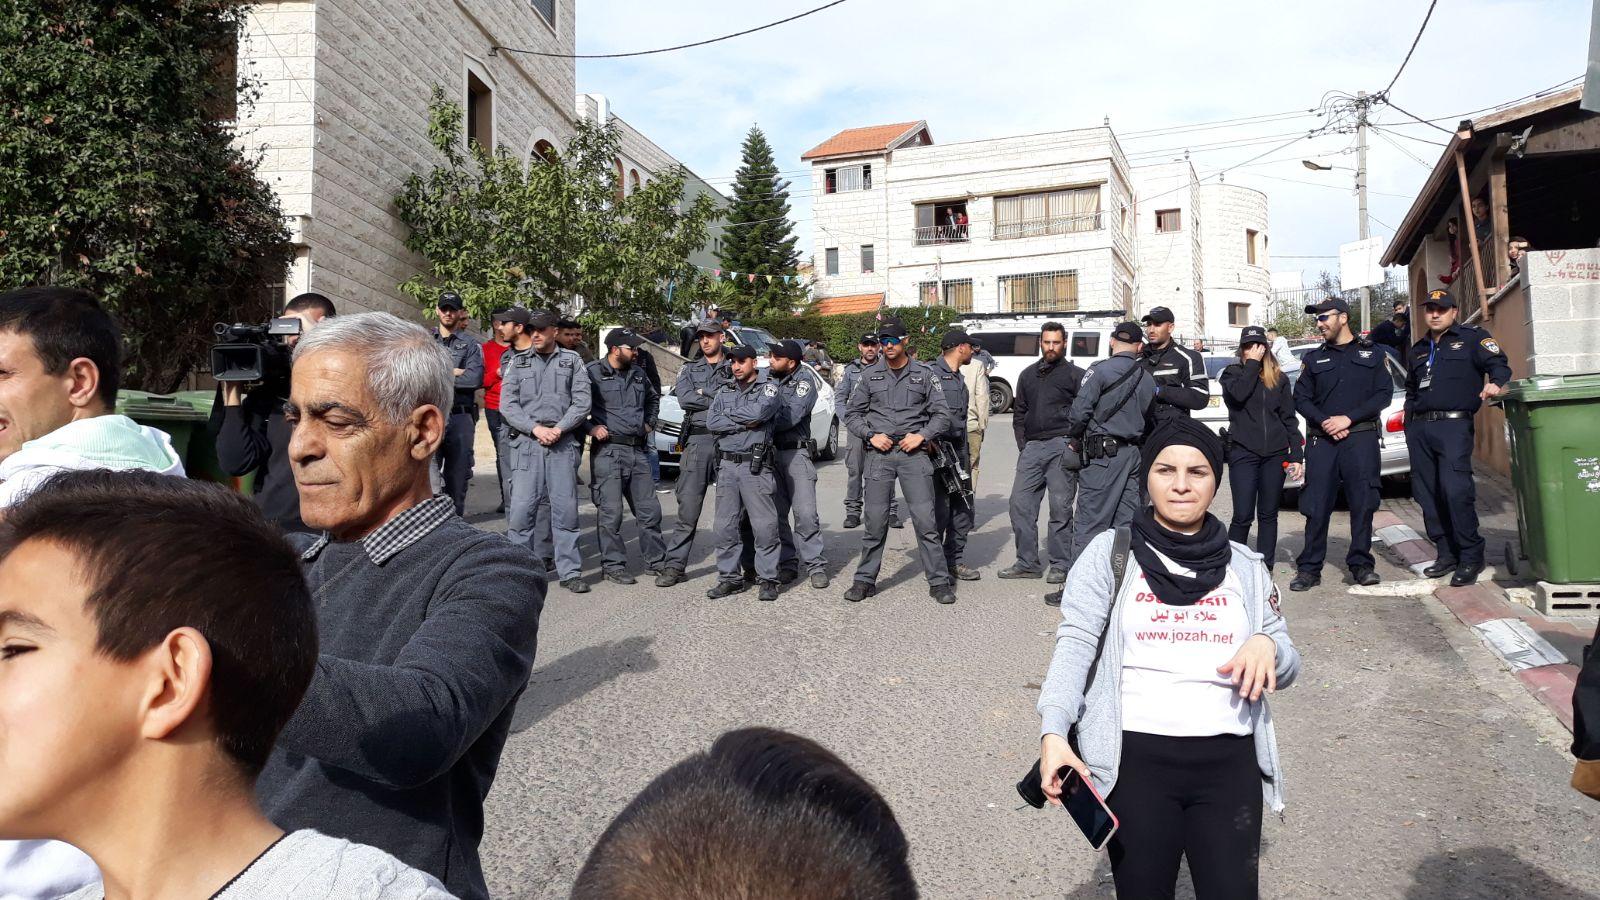  بركة: يتحتّم على فلسطينيي الداخل استقبال نتنياهو   بالصرامي على وجهه   2017122801543684